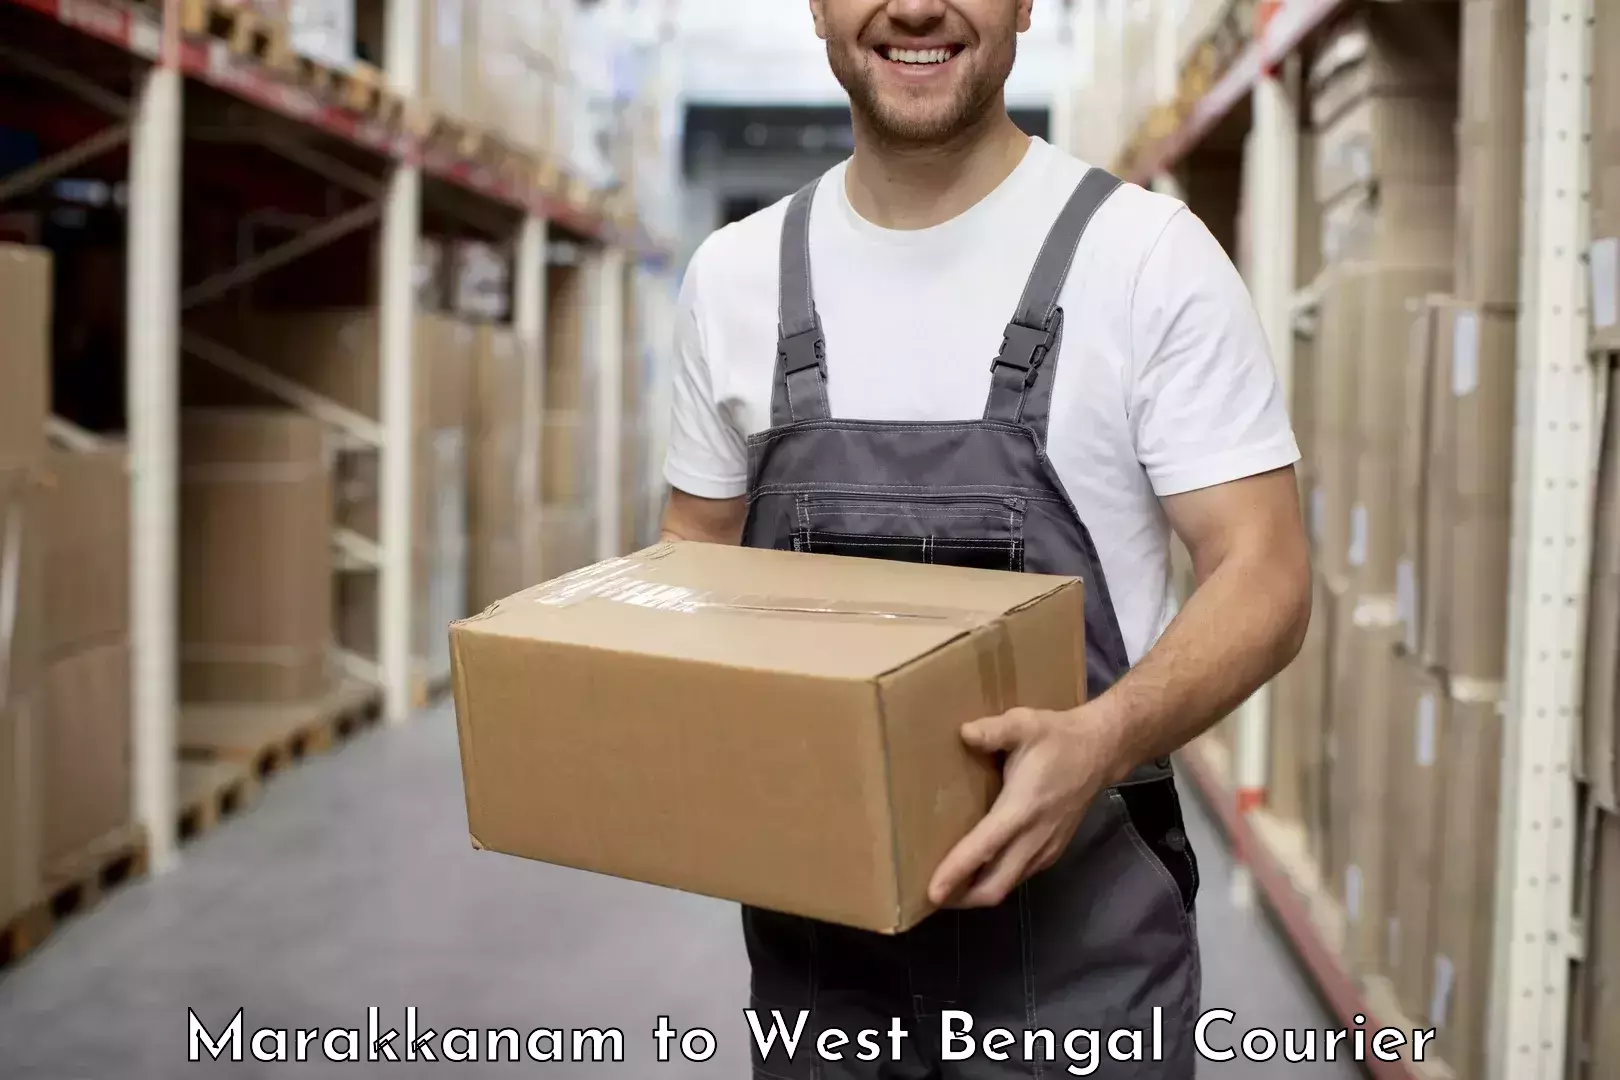 Flexible delivery schedules Marakkanam to Calcutta University Kolkata